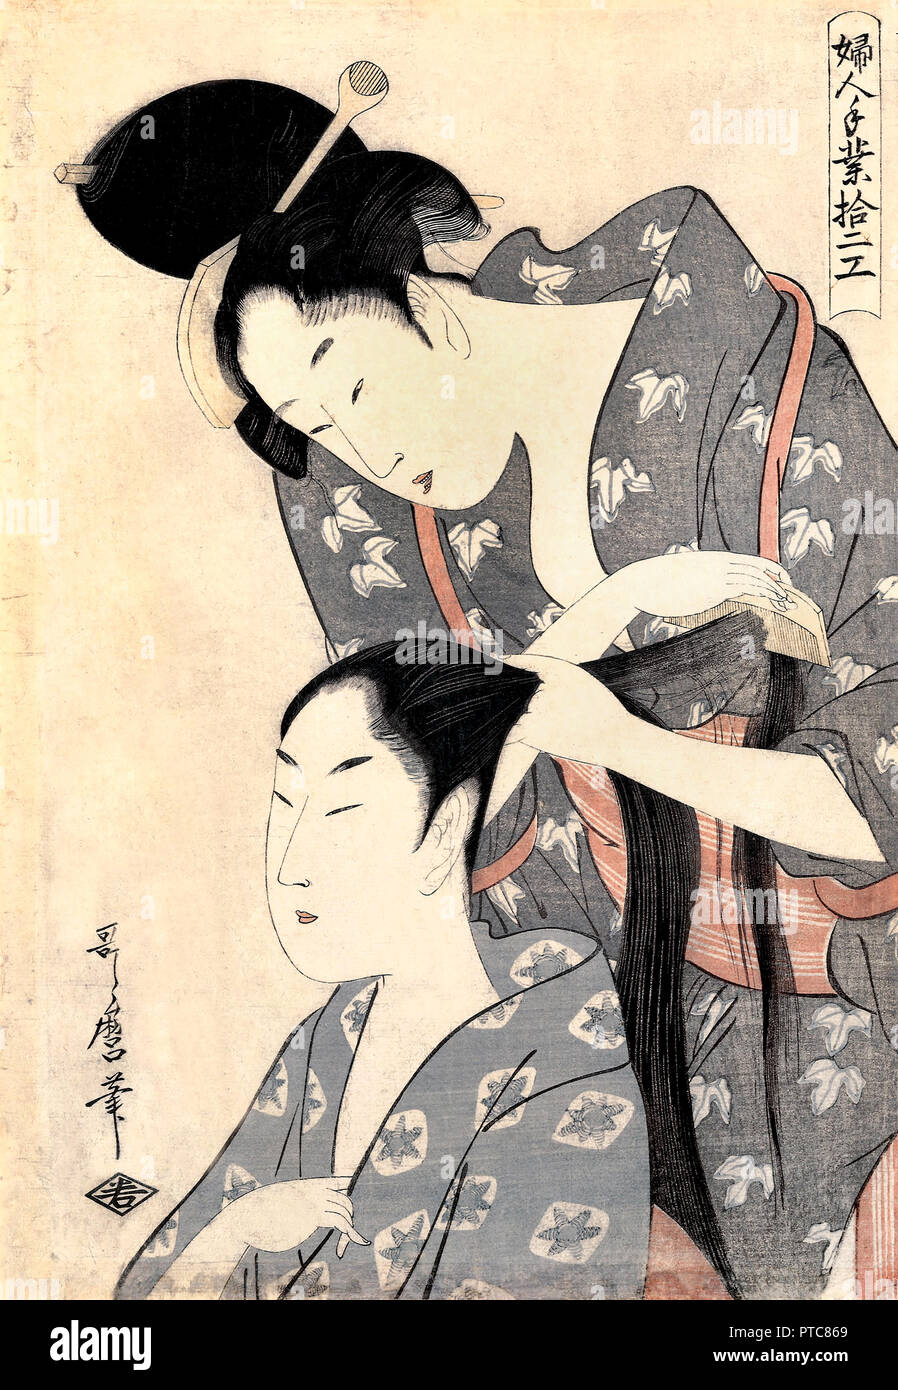 Kitagawa Utamaro, Peluquería / Kamiyui impresos xilográficos Circa 1799, sobre el papel, la Galería de Arte de Australia del Sur. Foto de stock